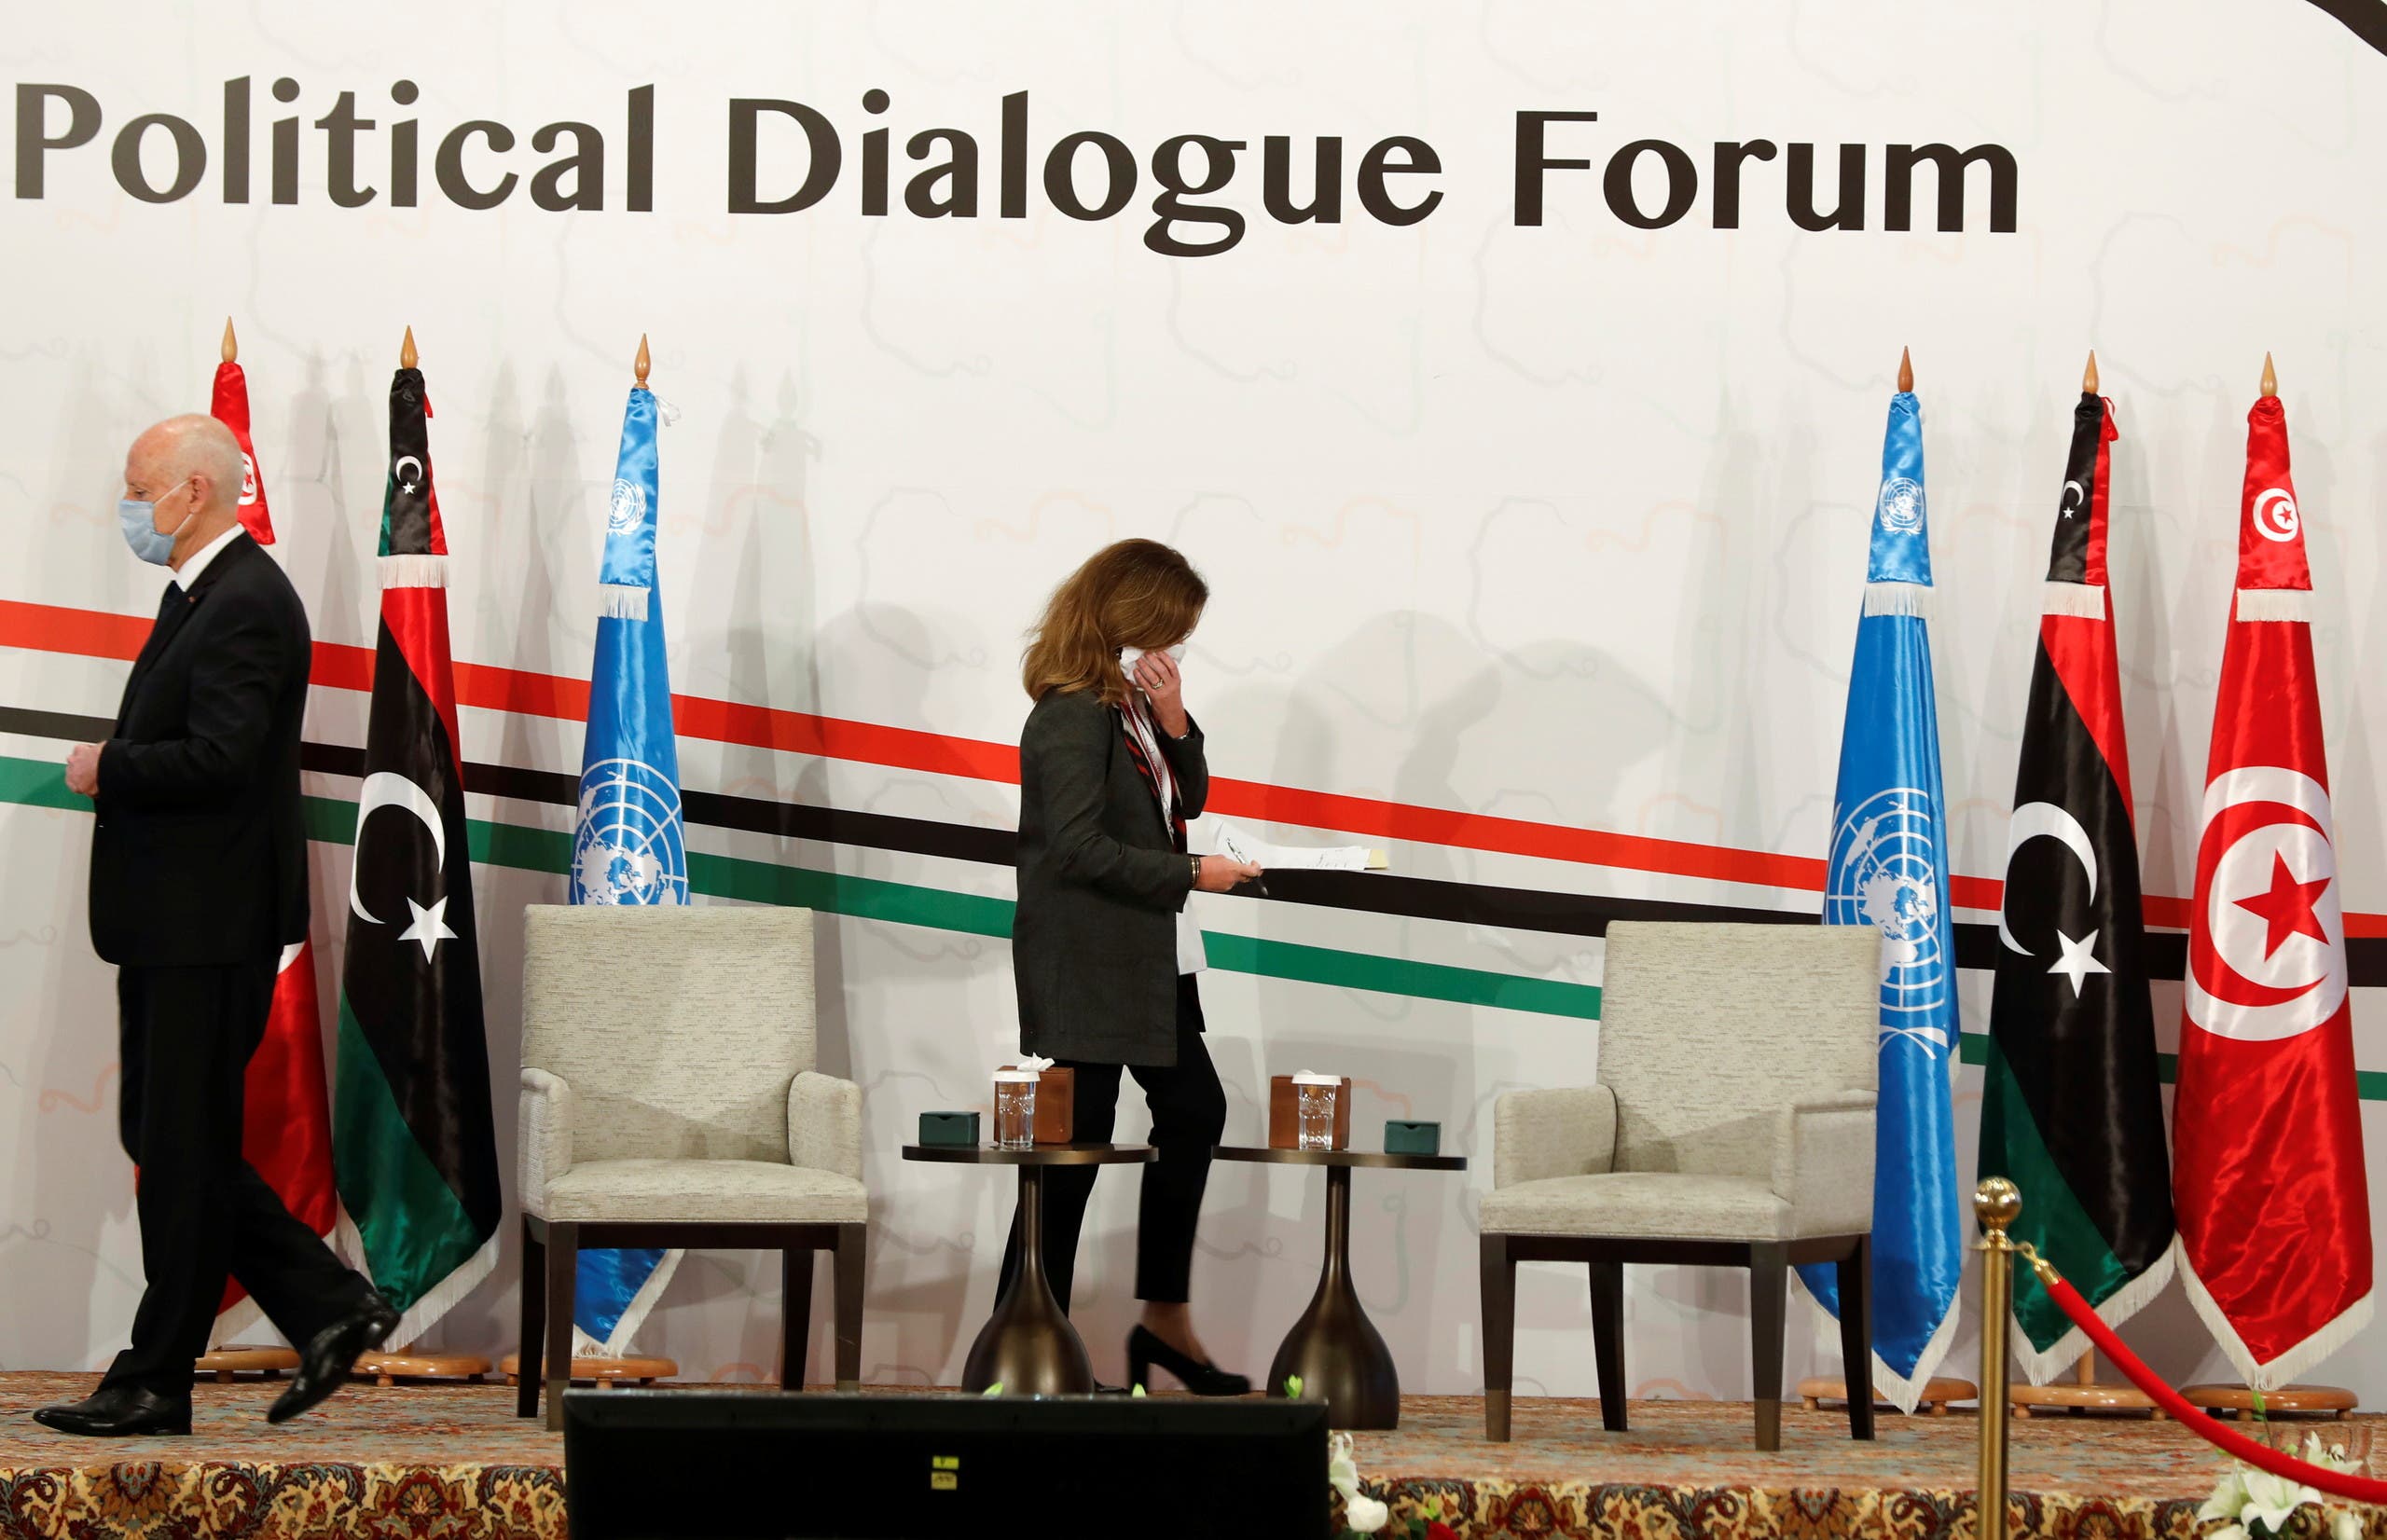 من ملتقى  الحوار السياسي الليبي في تونس(أرشيفية- رويترز)